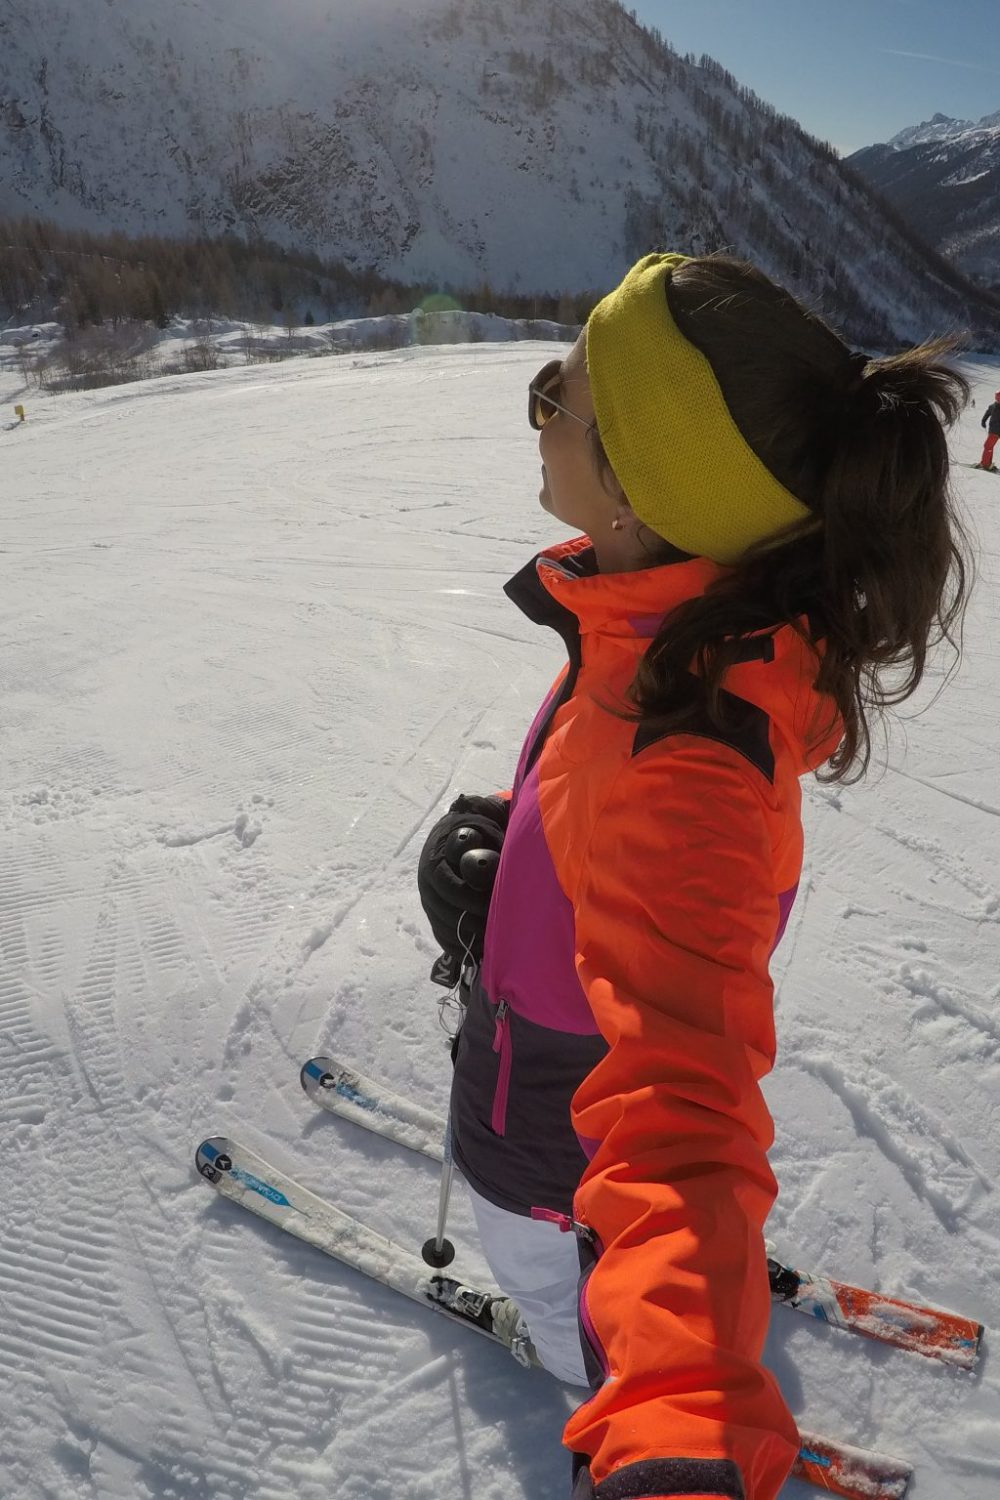 Dicas de roupas para a neve e esportes de inverno (ski e snowboard)